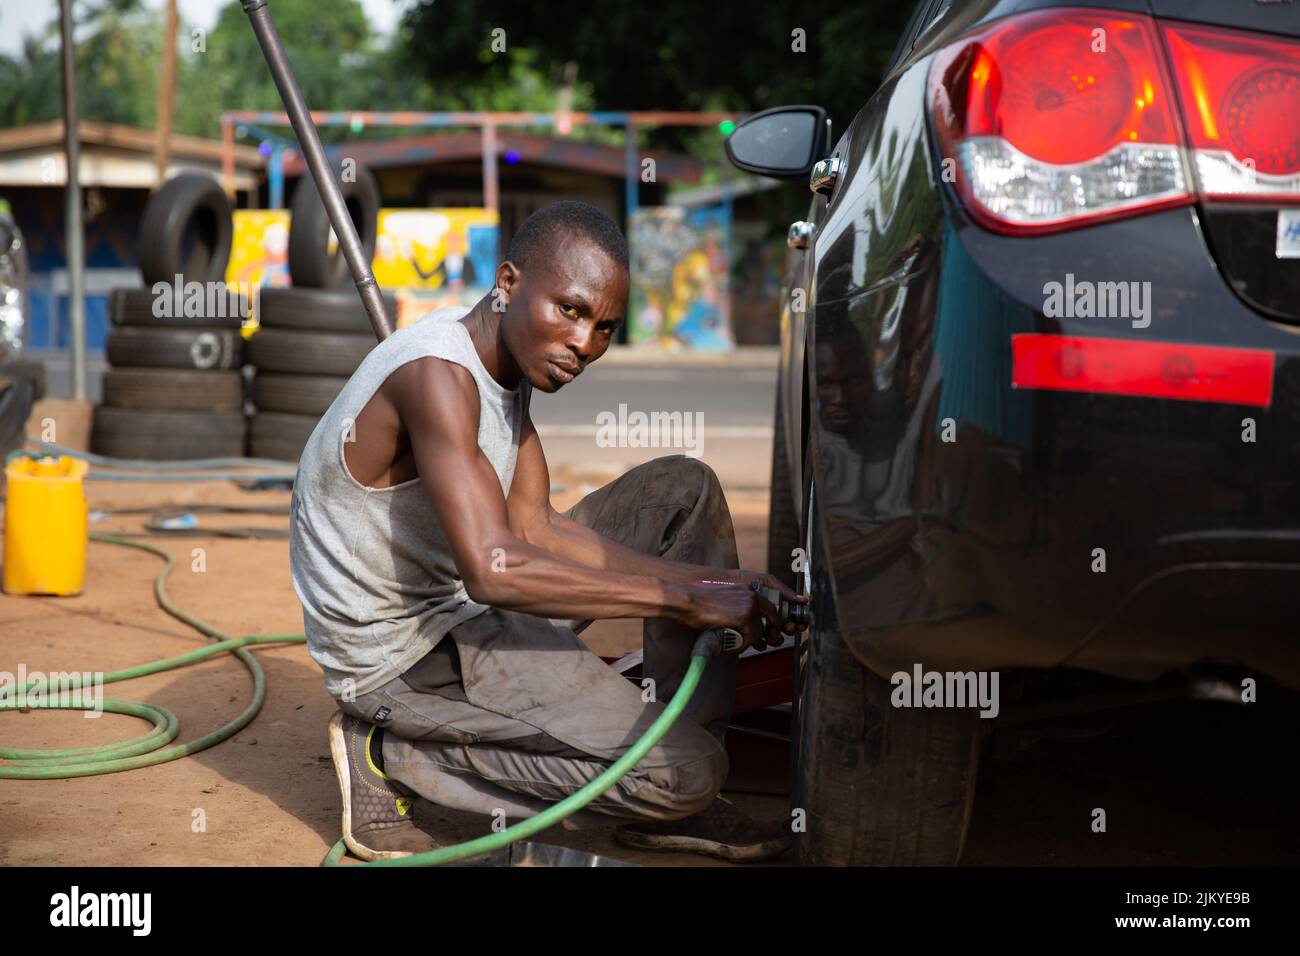 Afrikanischer Mechaniker, der einen Autoreifen mit einem elektronischen Schlagschrauber fixiert, Schuss des Royal Senchi Resort, Akosombo, Ghana an einem sonnigen Tag. Stockfoto